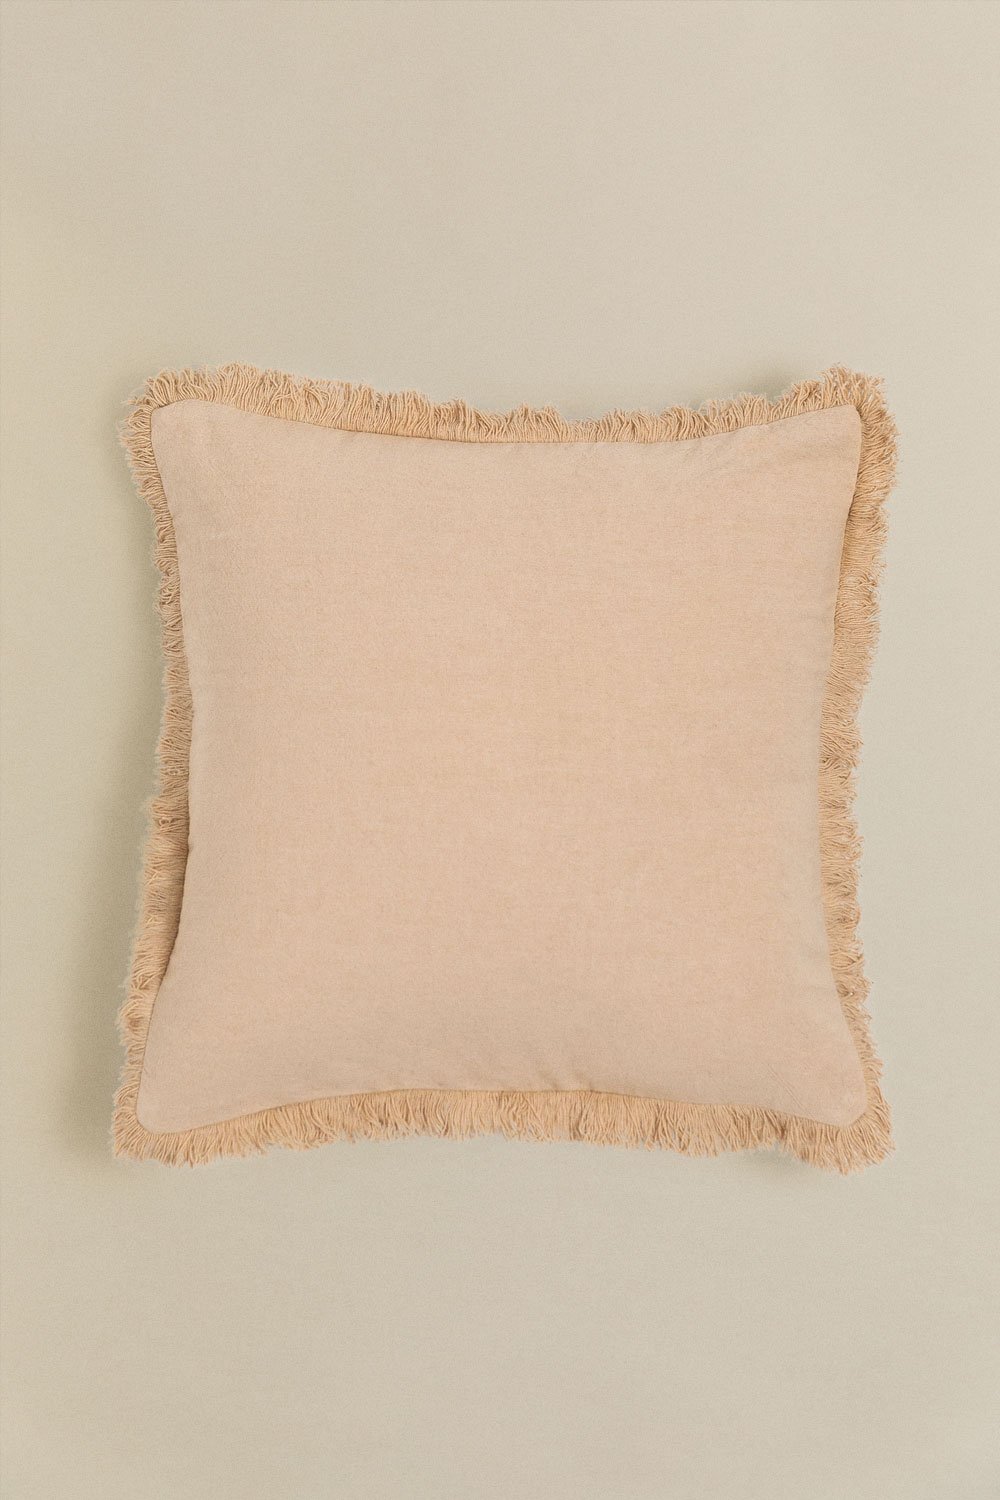 Cuscino quadrato in cotone (40x40 cm) Brigui, immagine della galleria 1